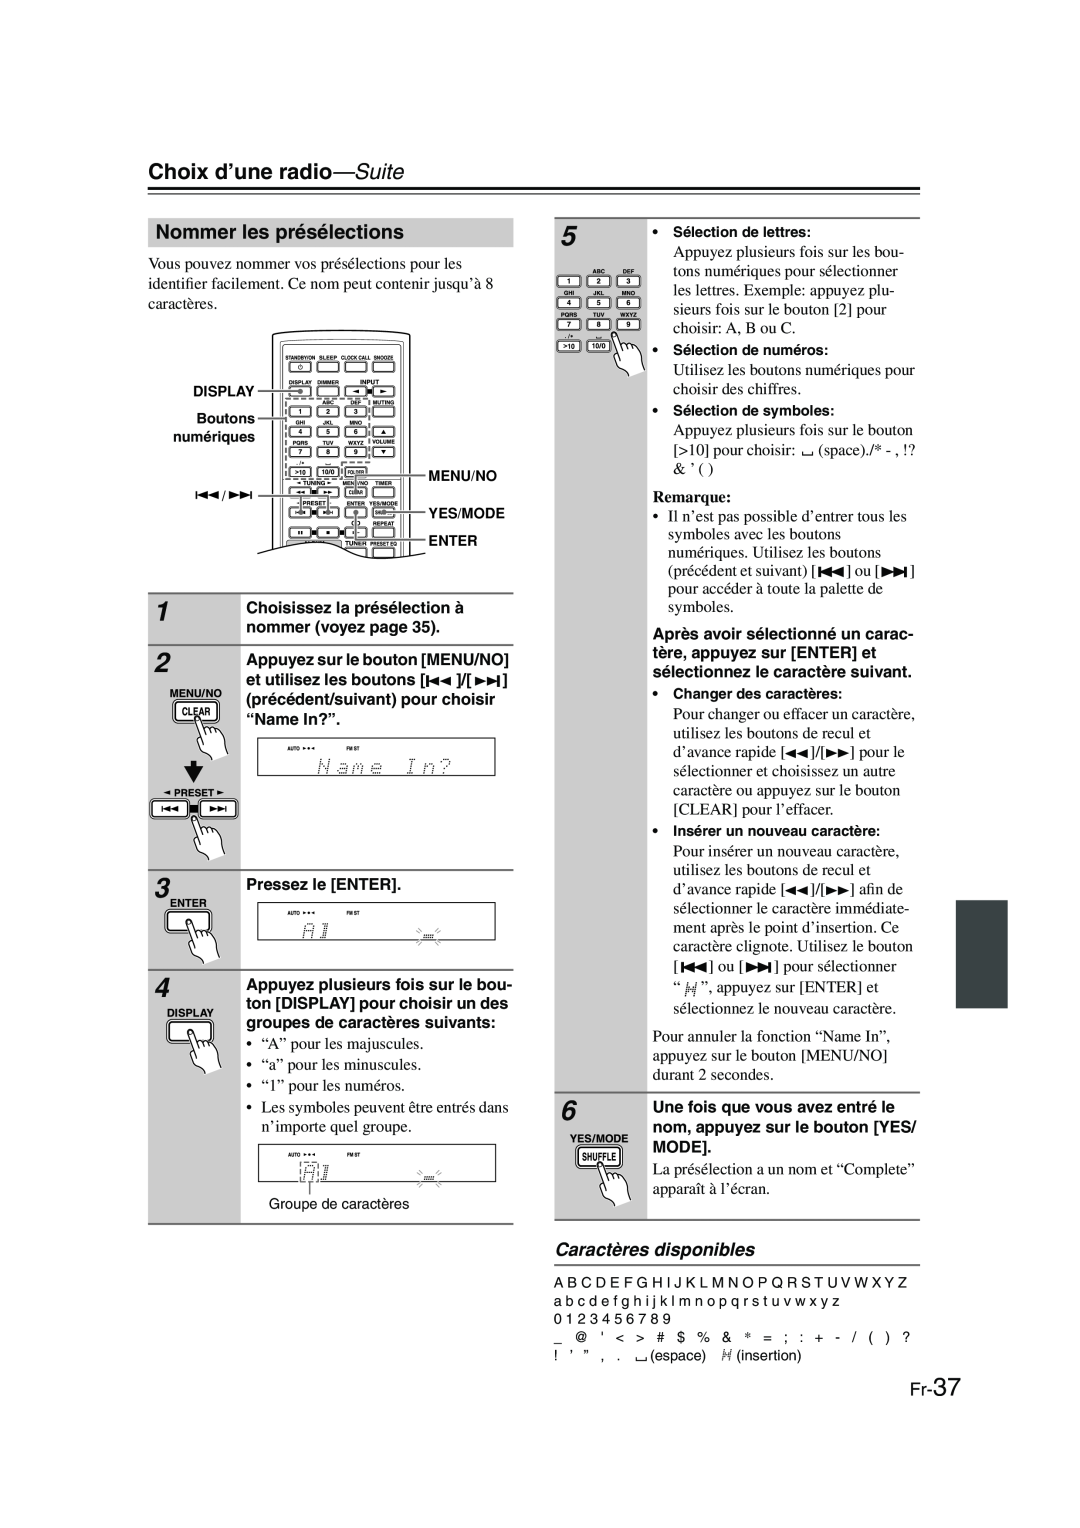 Onkyo CBX-300 instruction manual Nommer les présélections, Caractères disponibles, Fr-37, Choix d’une radio—Suite, Remarque 